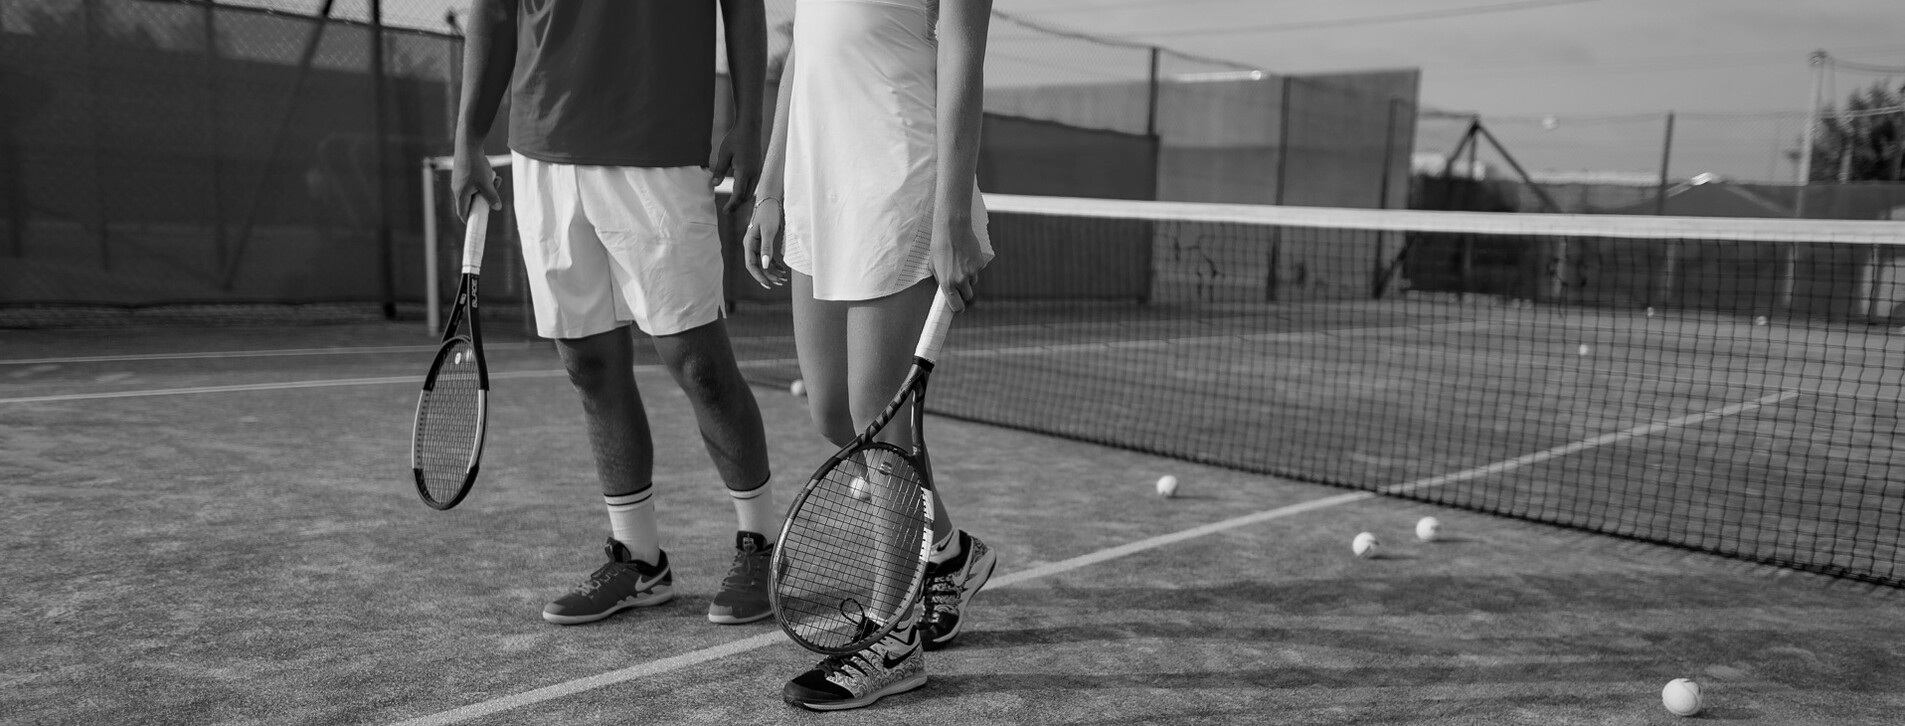 Фото 1 - Мастер-класс большого тенниса для двоих